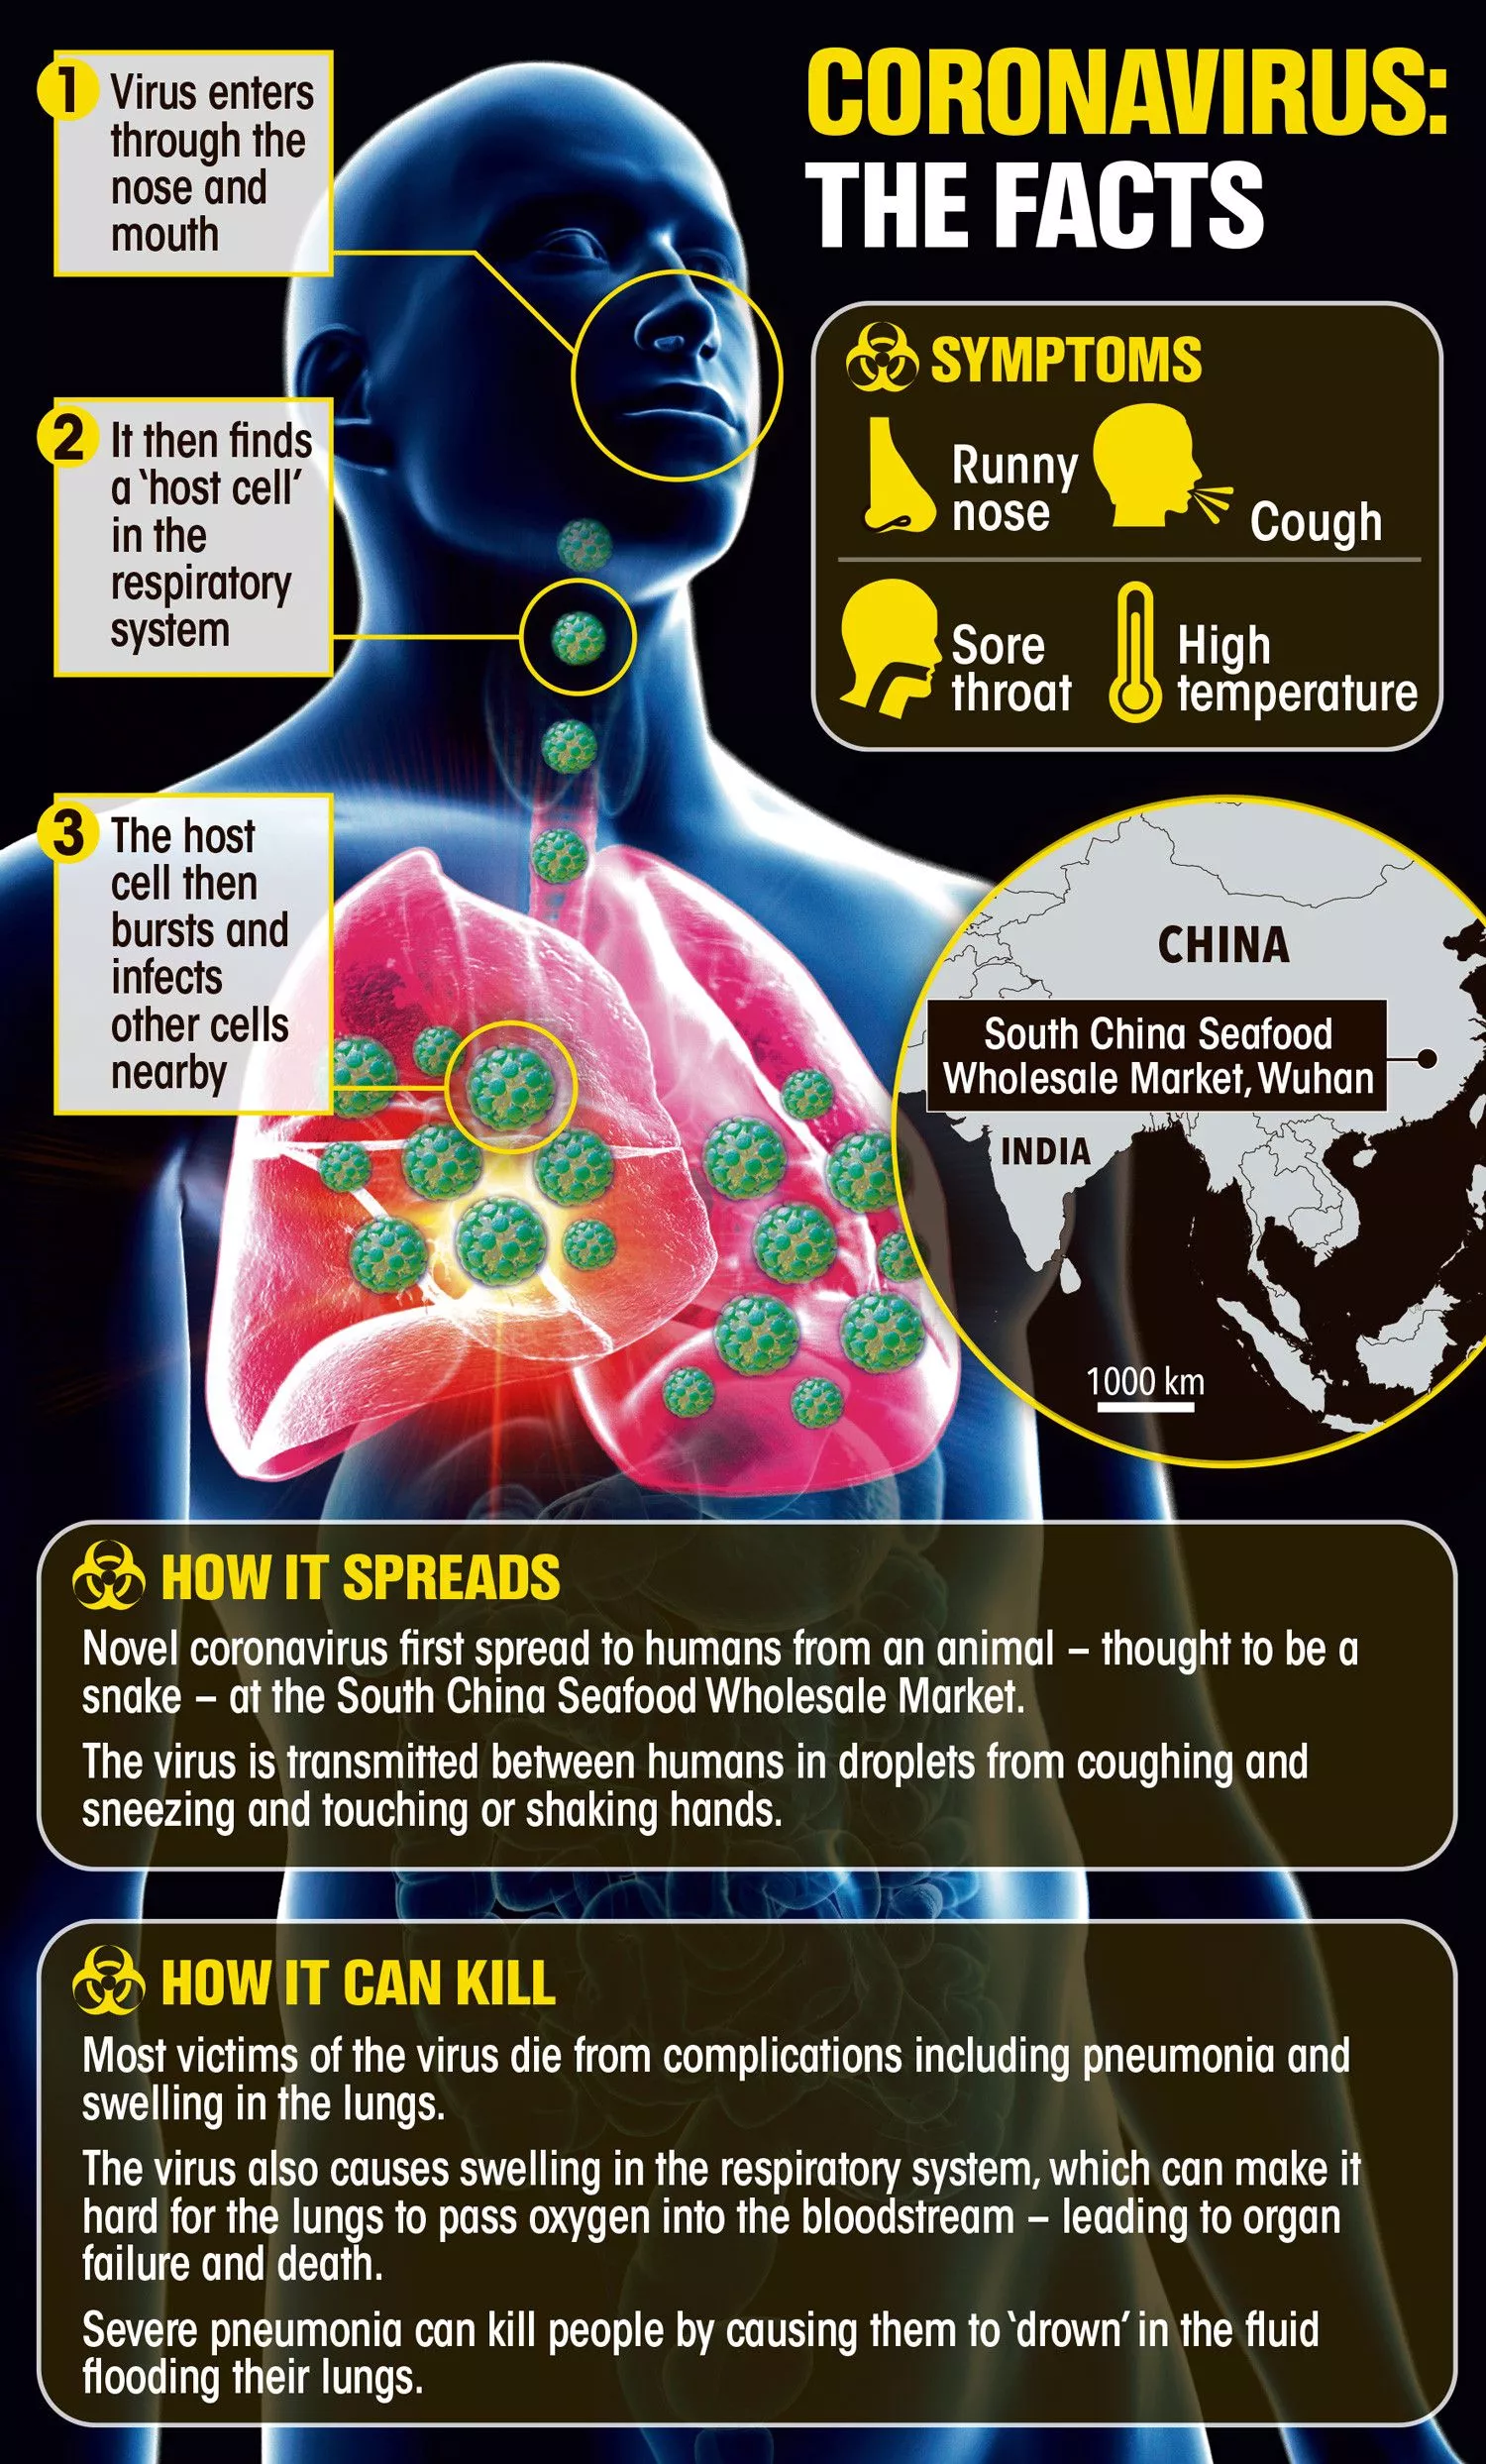 Coronavirus Infographic